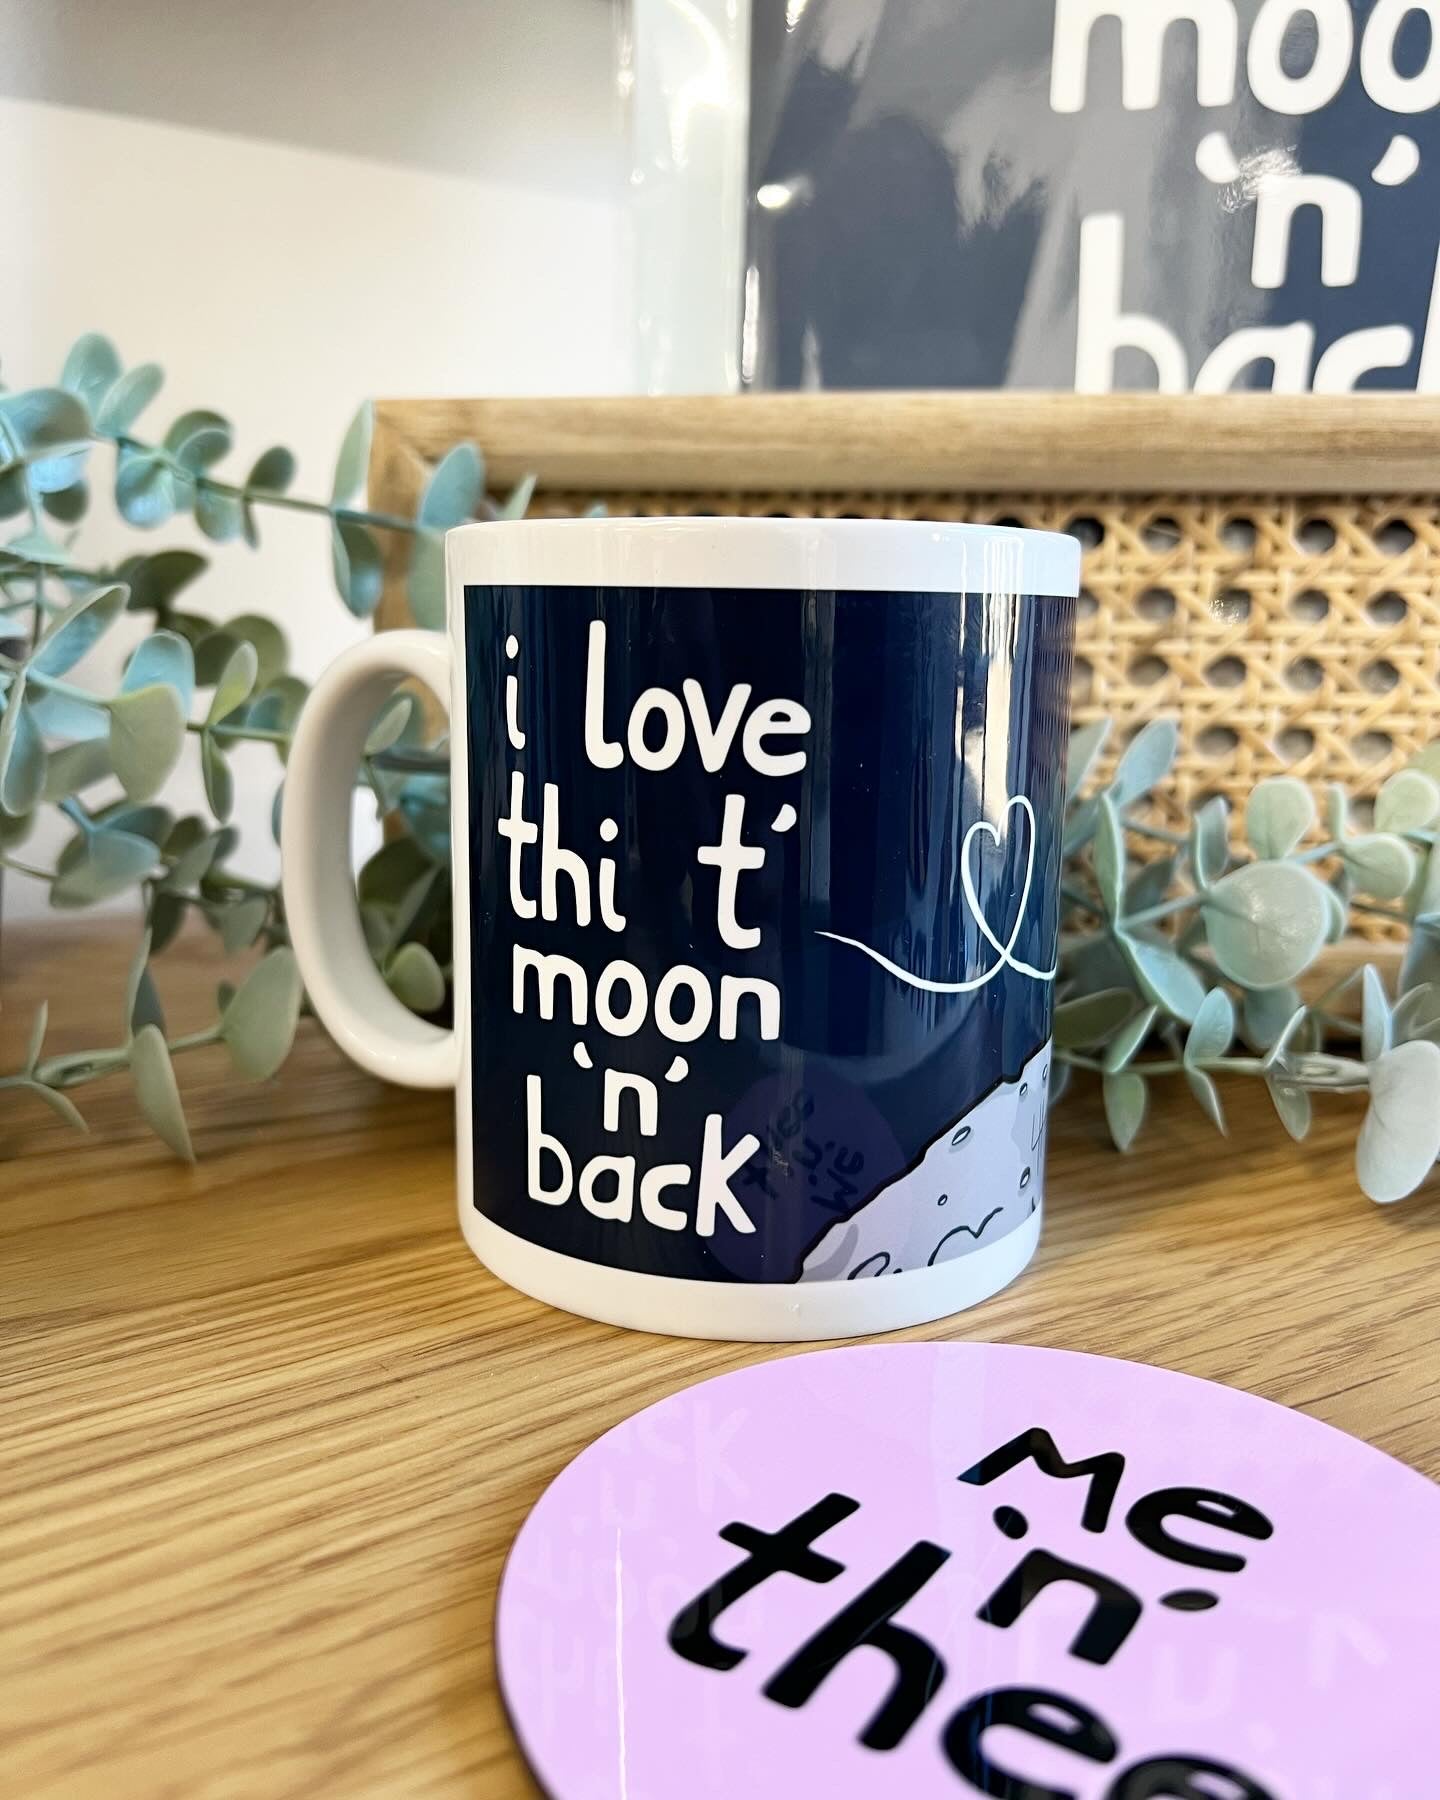 Love Thi T Moon N Back - Yorkshire Slang Mug - Luke Horton